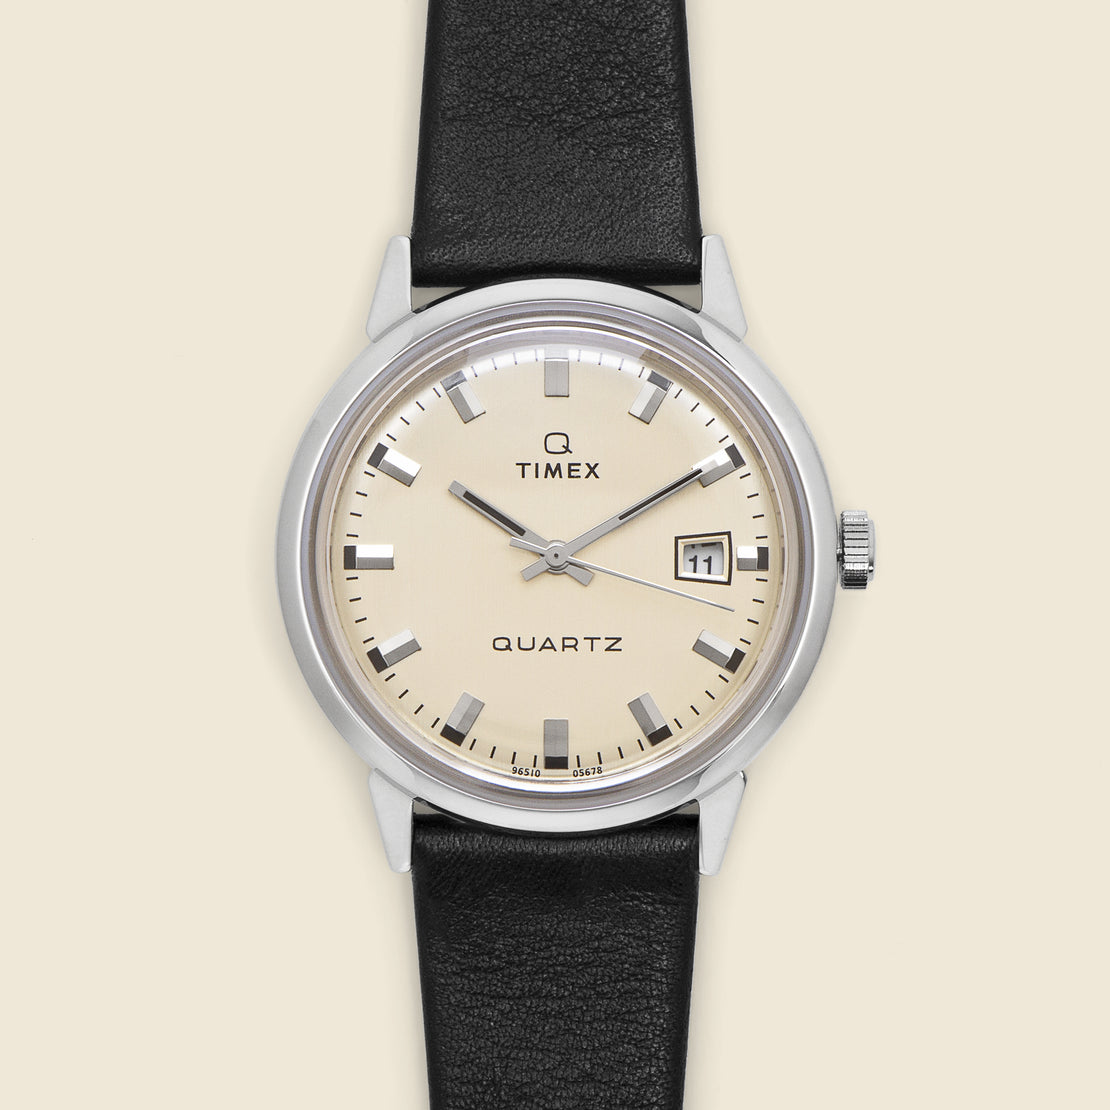 Timex Q 1978 Reissue Date Watch 35mm - Cream/Black Leather